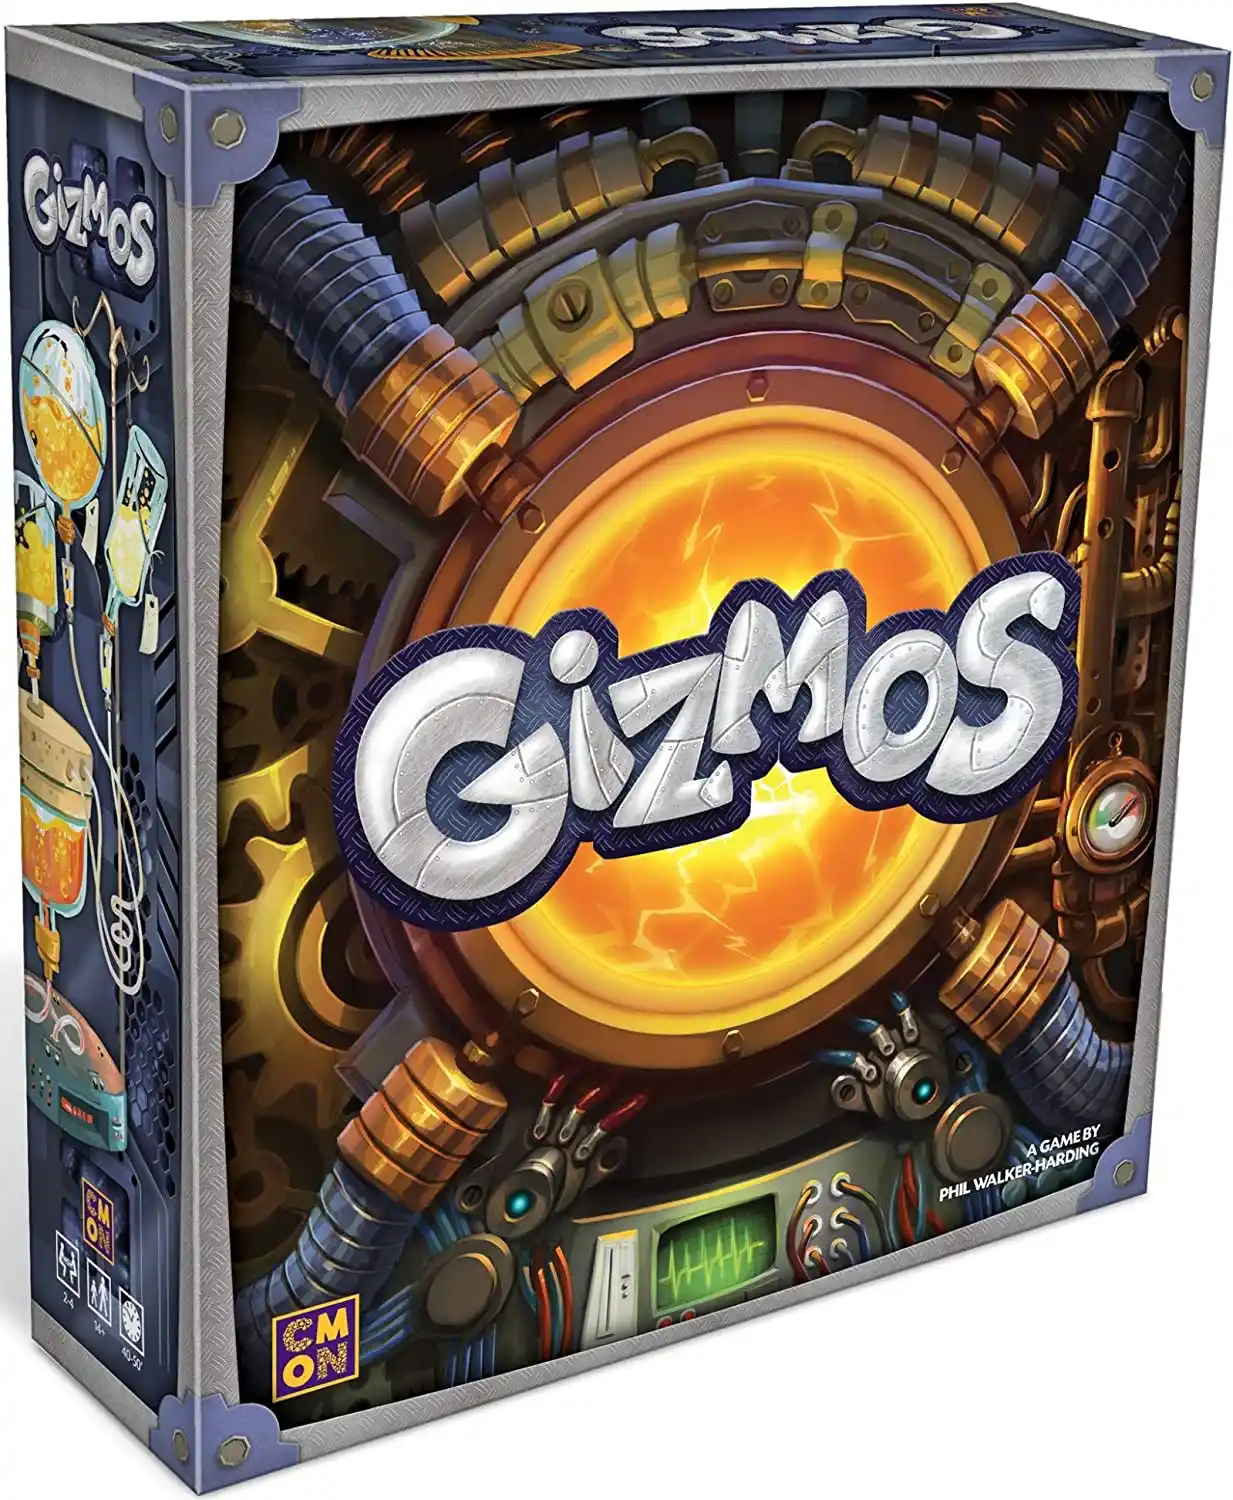 Gizmos (2018) board game box